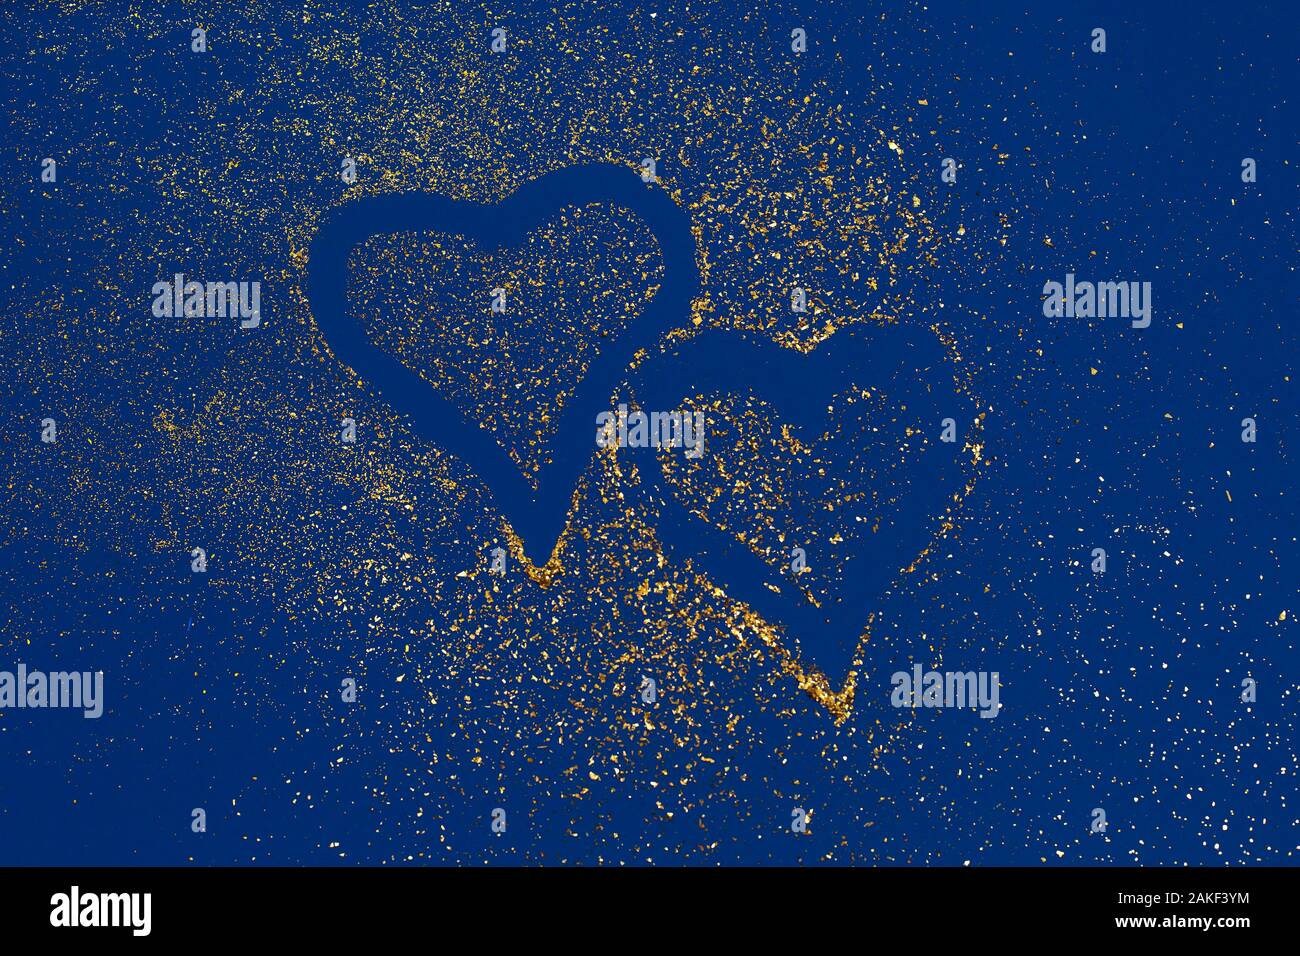 Dos corazones de lentejuelas de oro sobre fondo de tendencia azul. Día de San Valentín, el amor concepto. oncept de color de 2020. Tendencia principal del año. Foto de stock